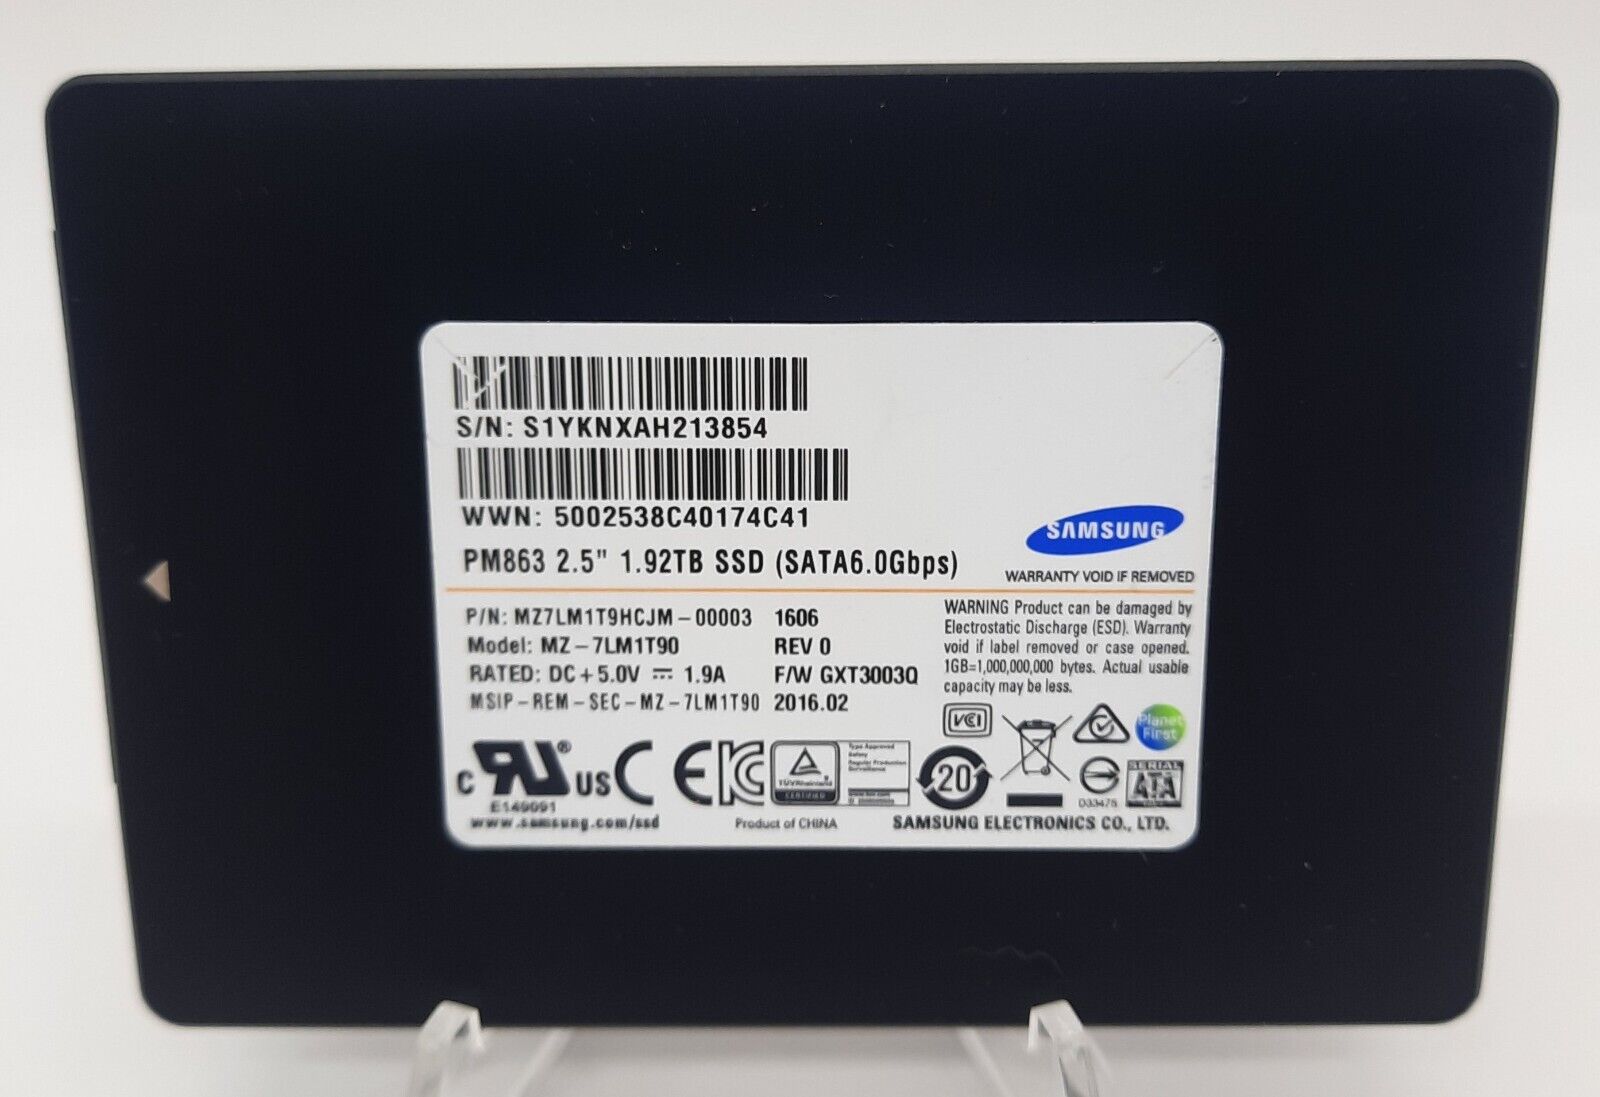 1.92TB SSD SATA 2.5 SAMSUNG MZ-7LM1T90 PM863 MZ7LM1T9HCJM  Tested 95%+